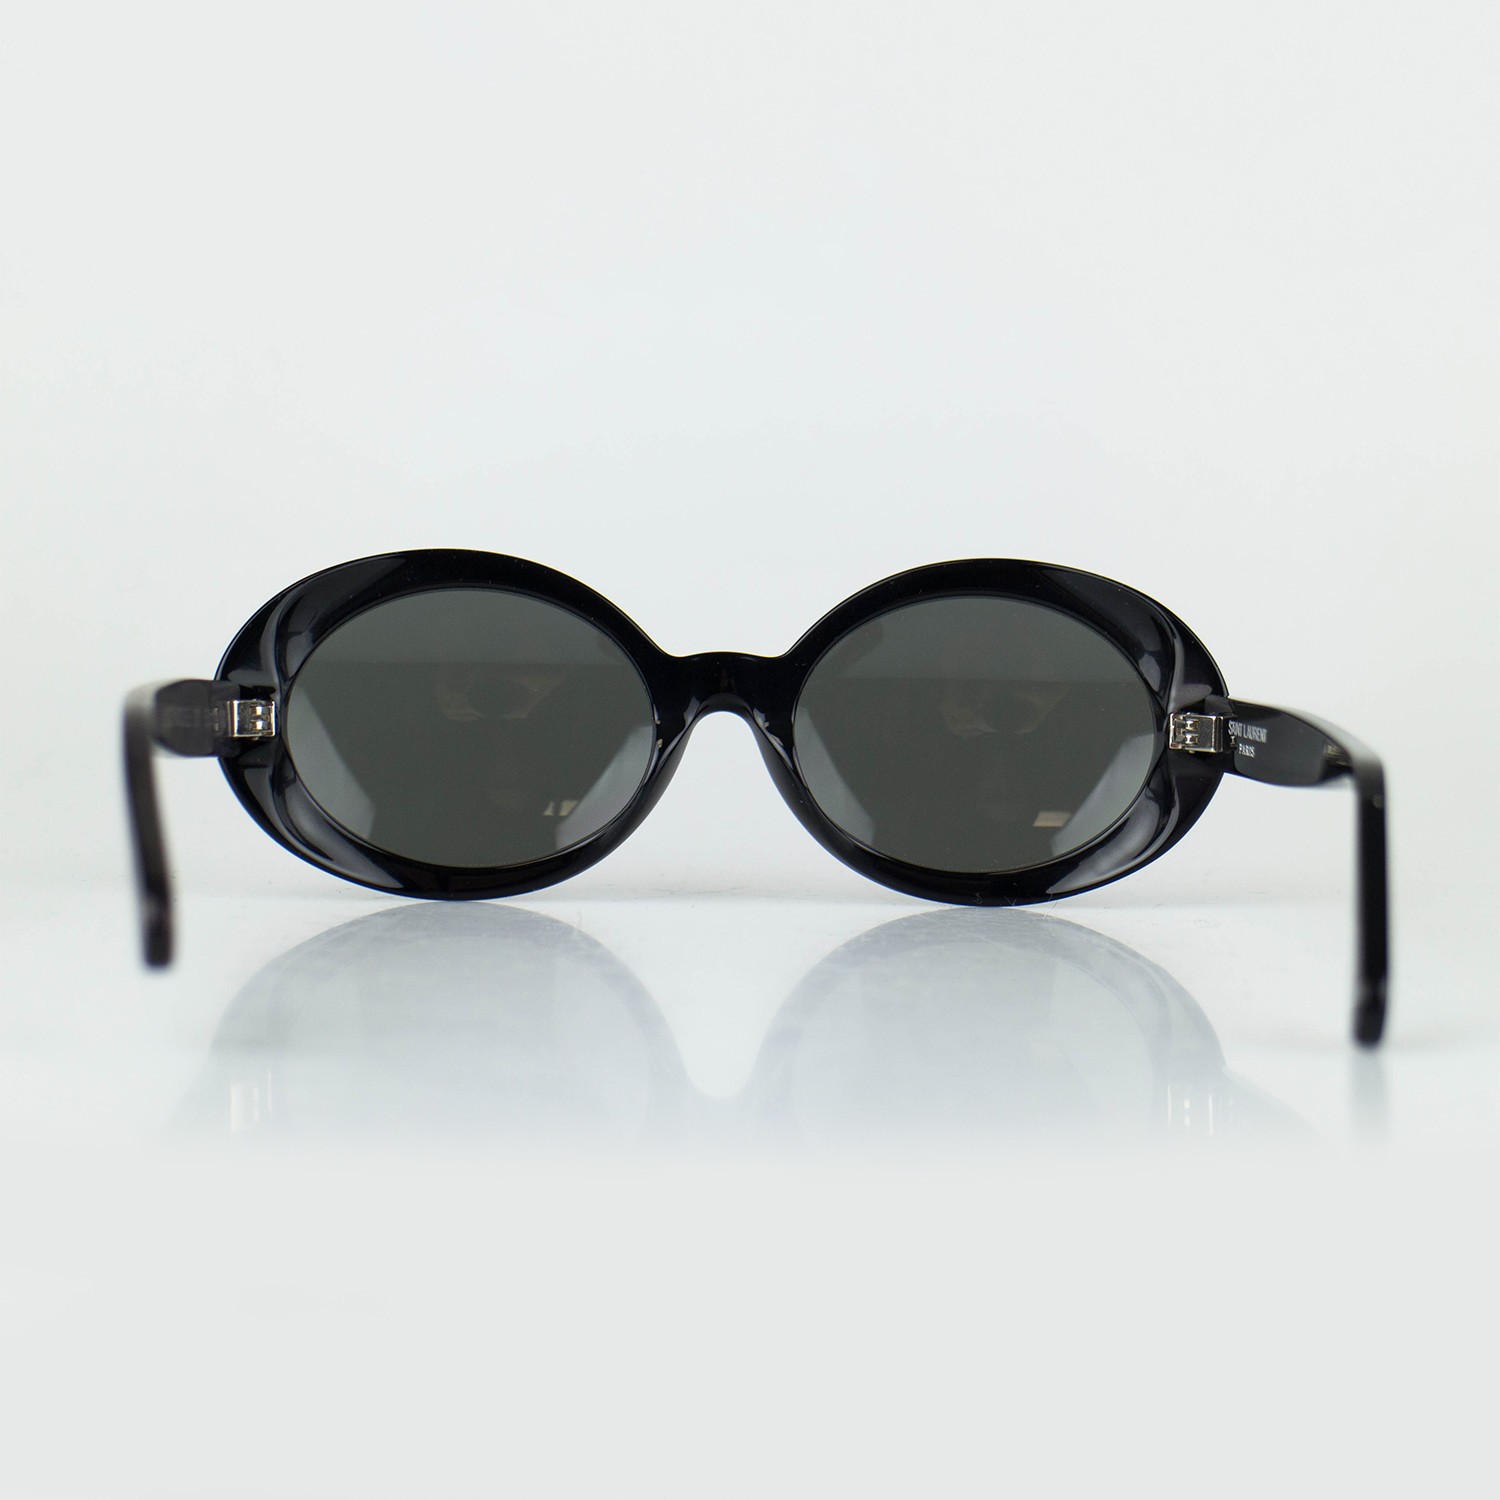 Saint Laurent Paris Oval Sunglasses Black Designer Women S Accessories Touch Of Modern